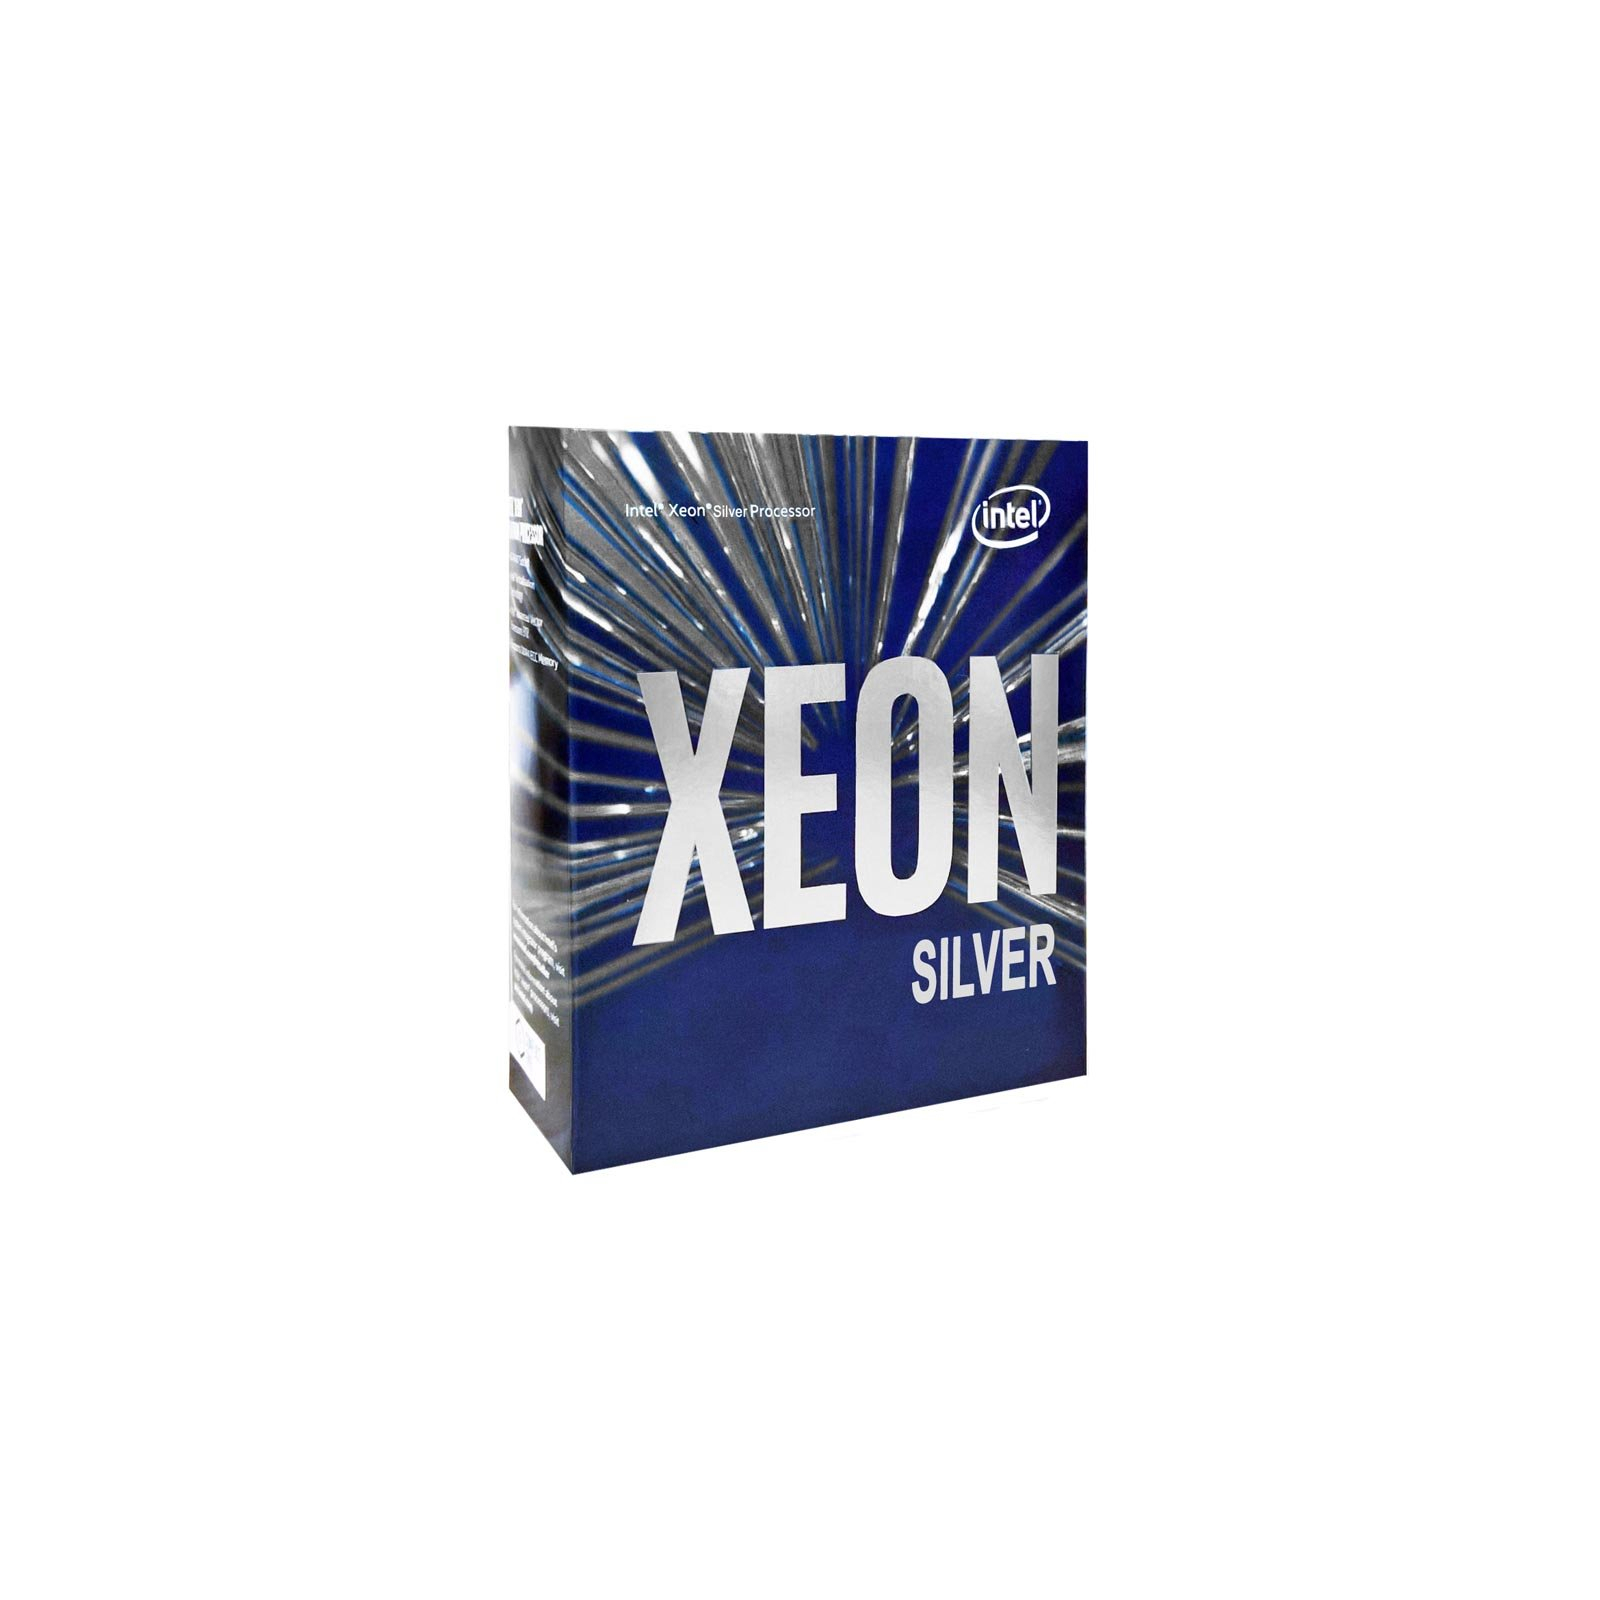 Процессор серверный INTEL Xeon Silver 4110 8C/16T/2.1GHz/11MB/FCLGA3647/BOX (BX806734110)